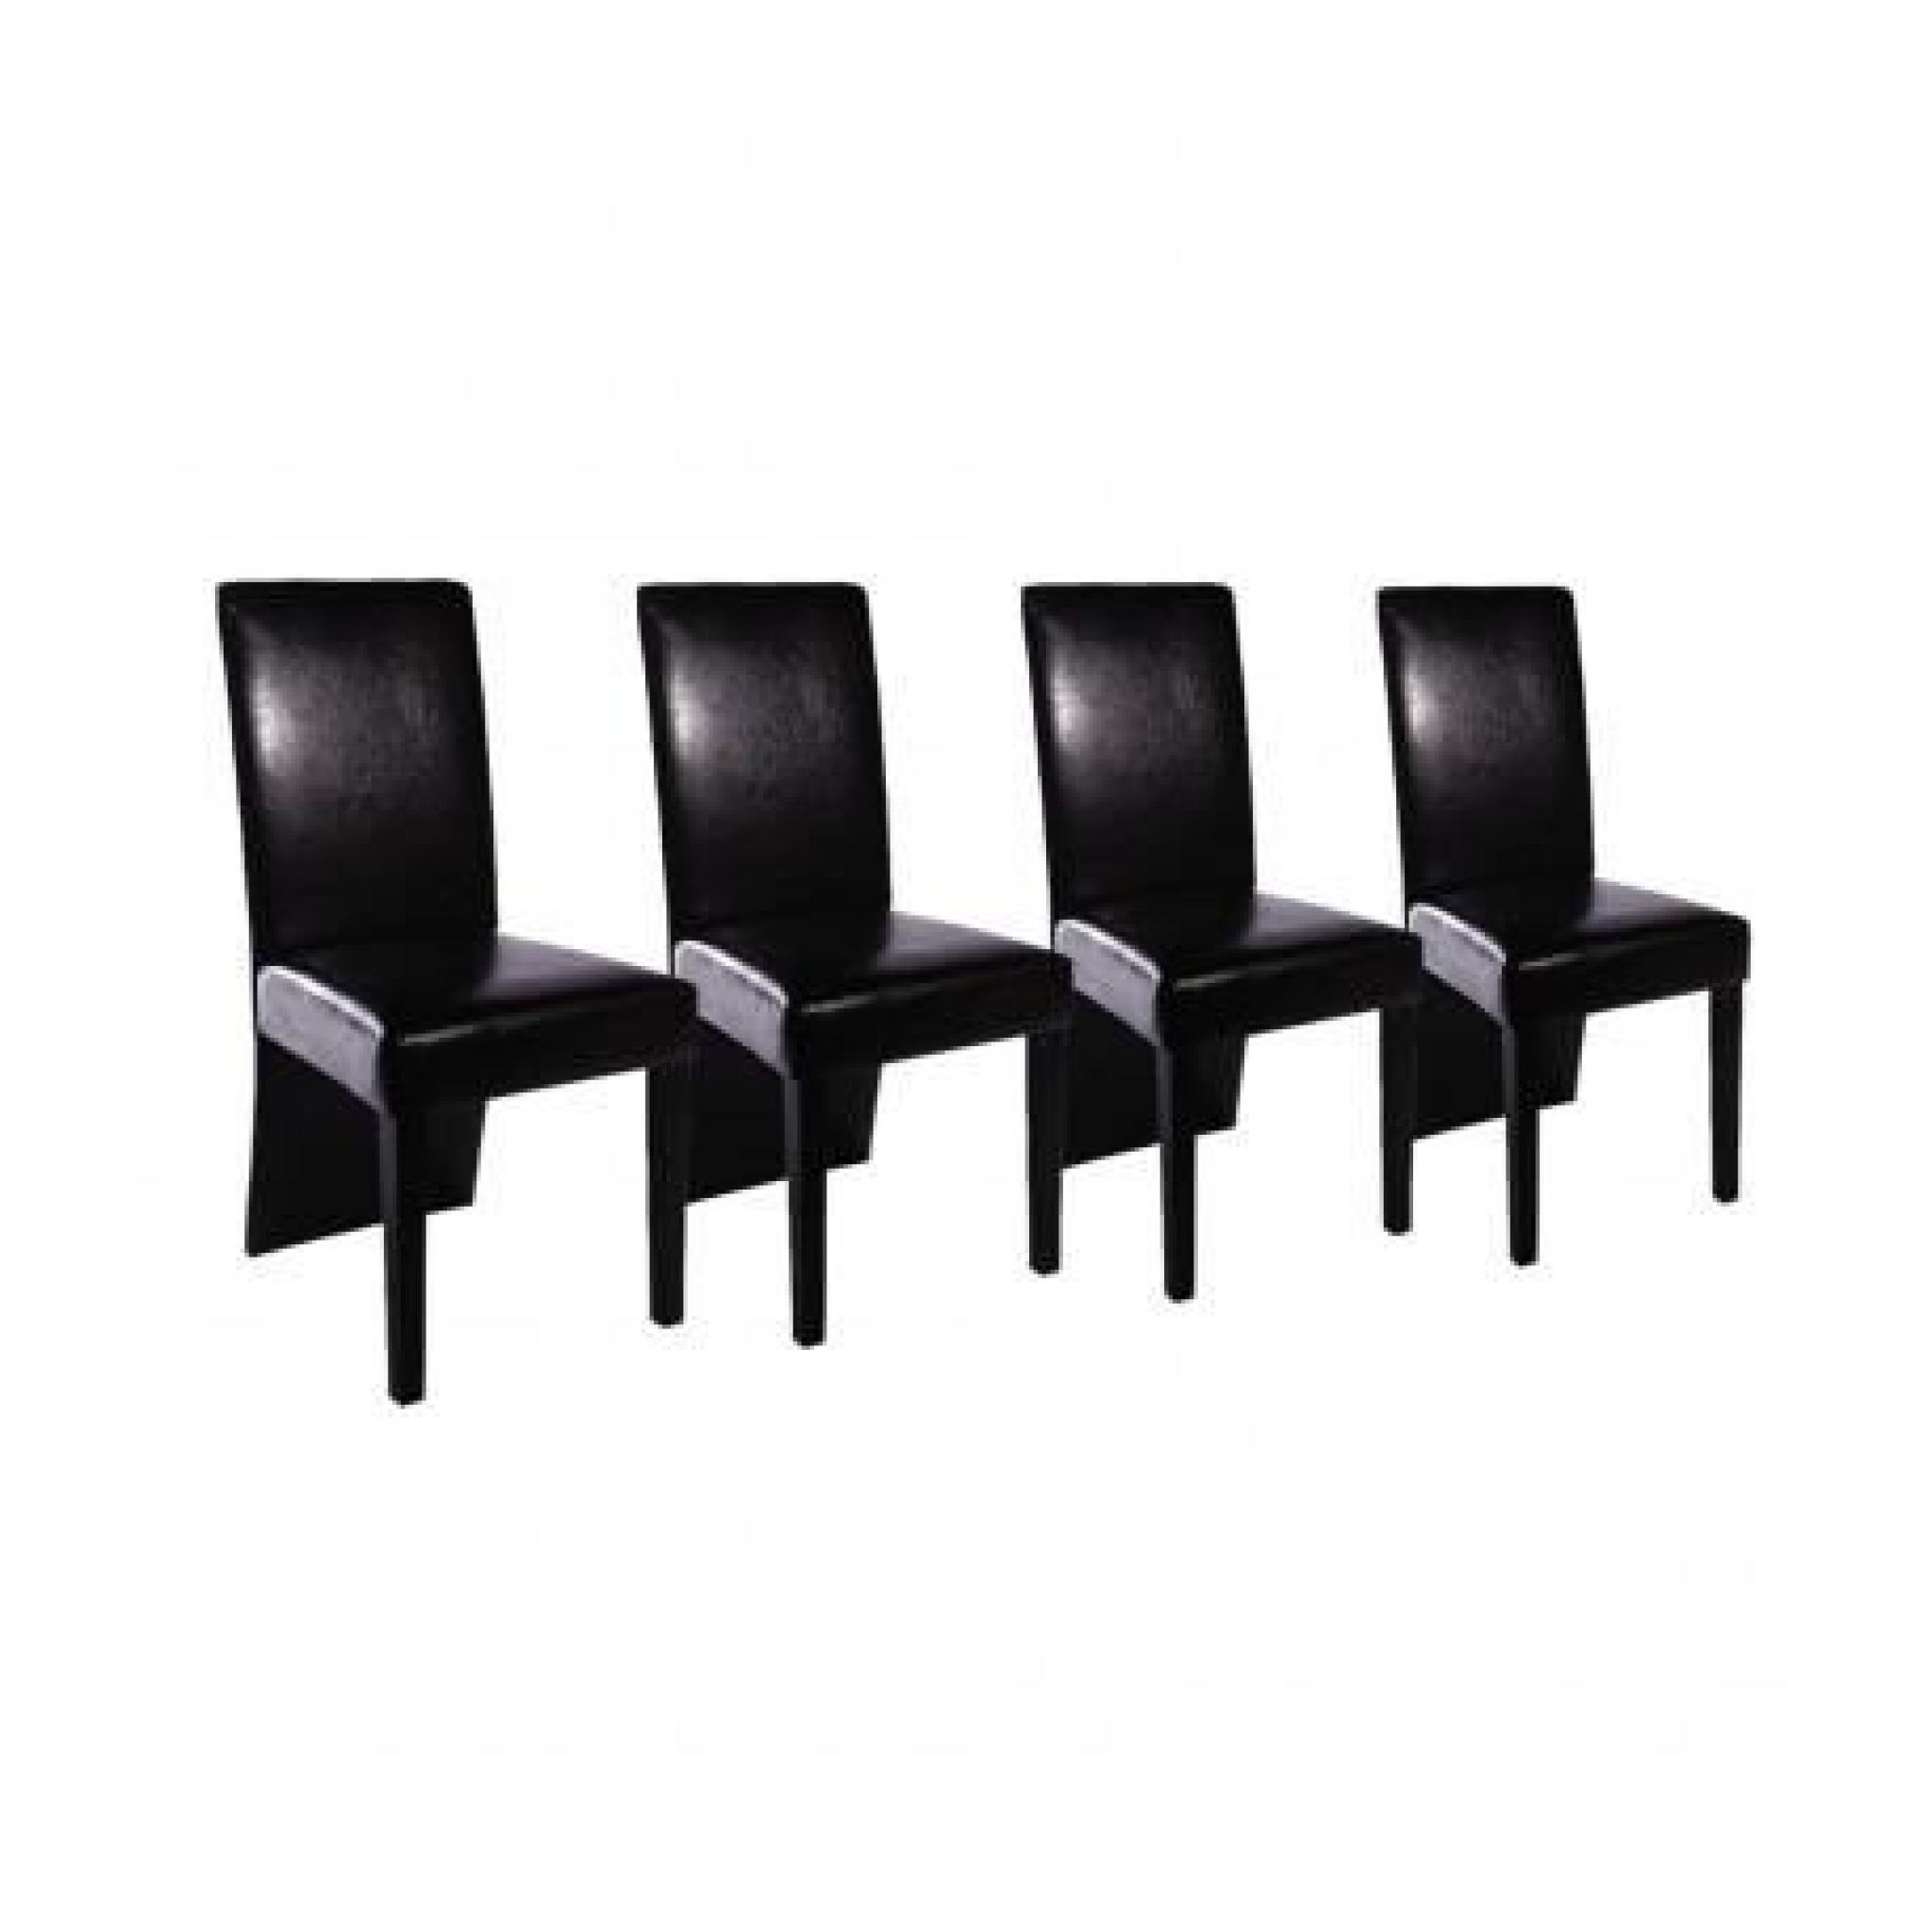 Chaise design bois noir (lot de 4)PU pas cher